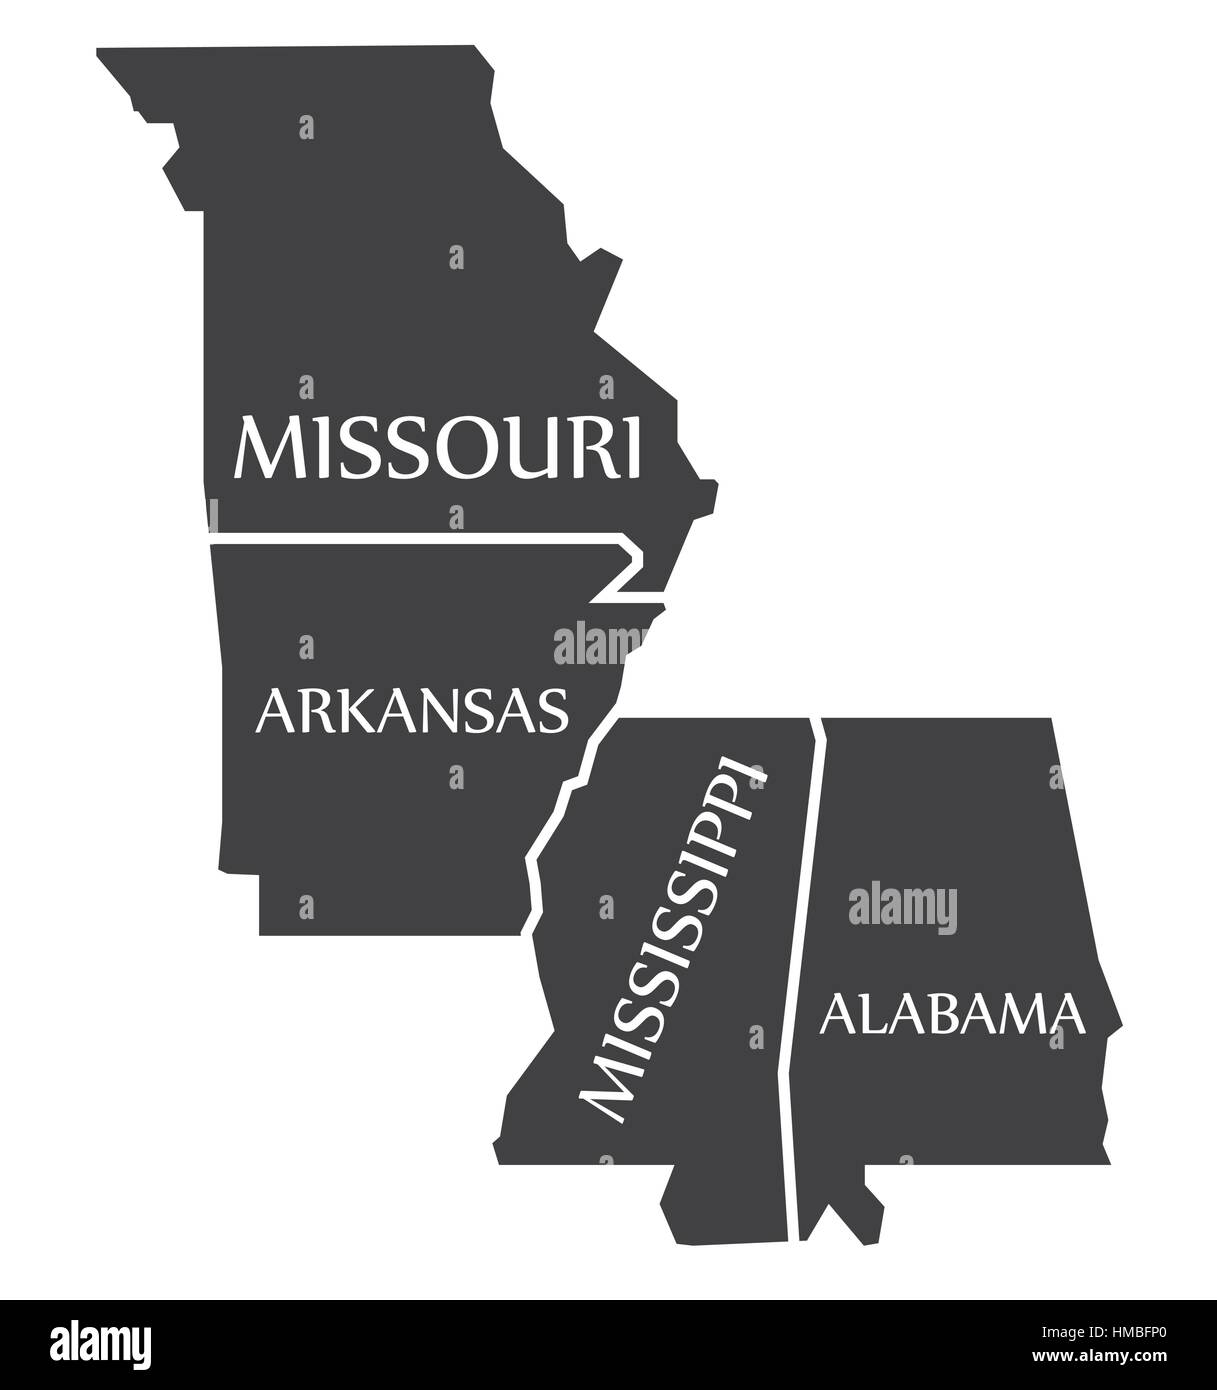 Missouri - Arkansas - Mississippi - Alabama Karte gekennzeichnet schwarz Abbildung Stock Vektor